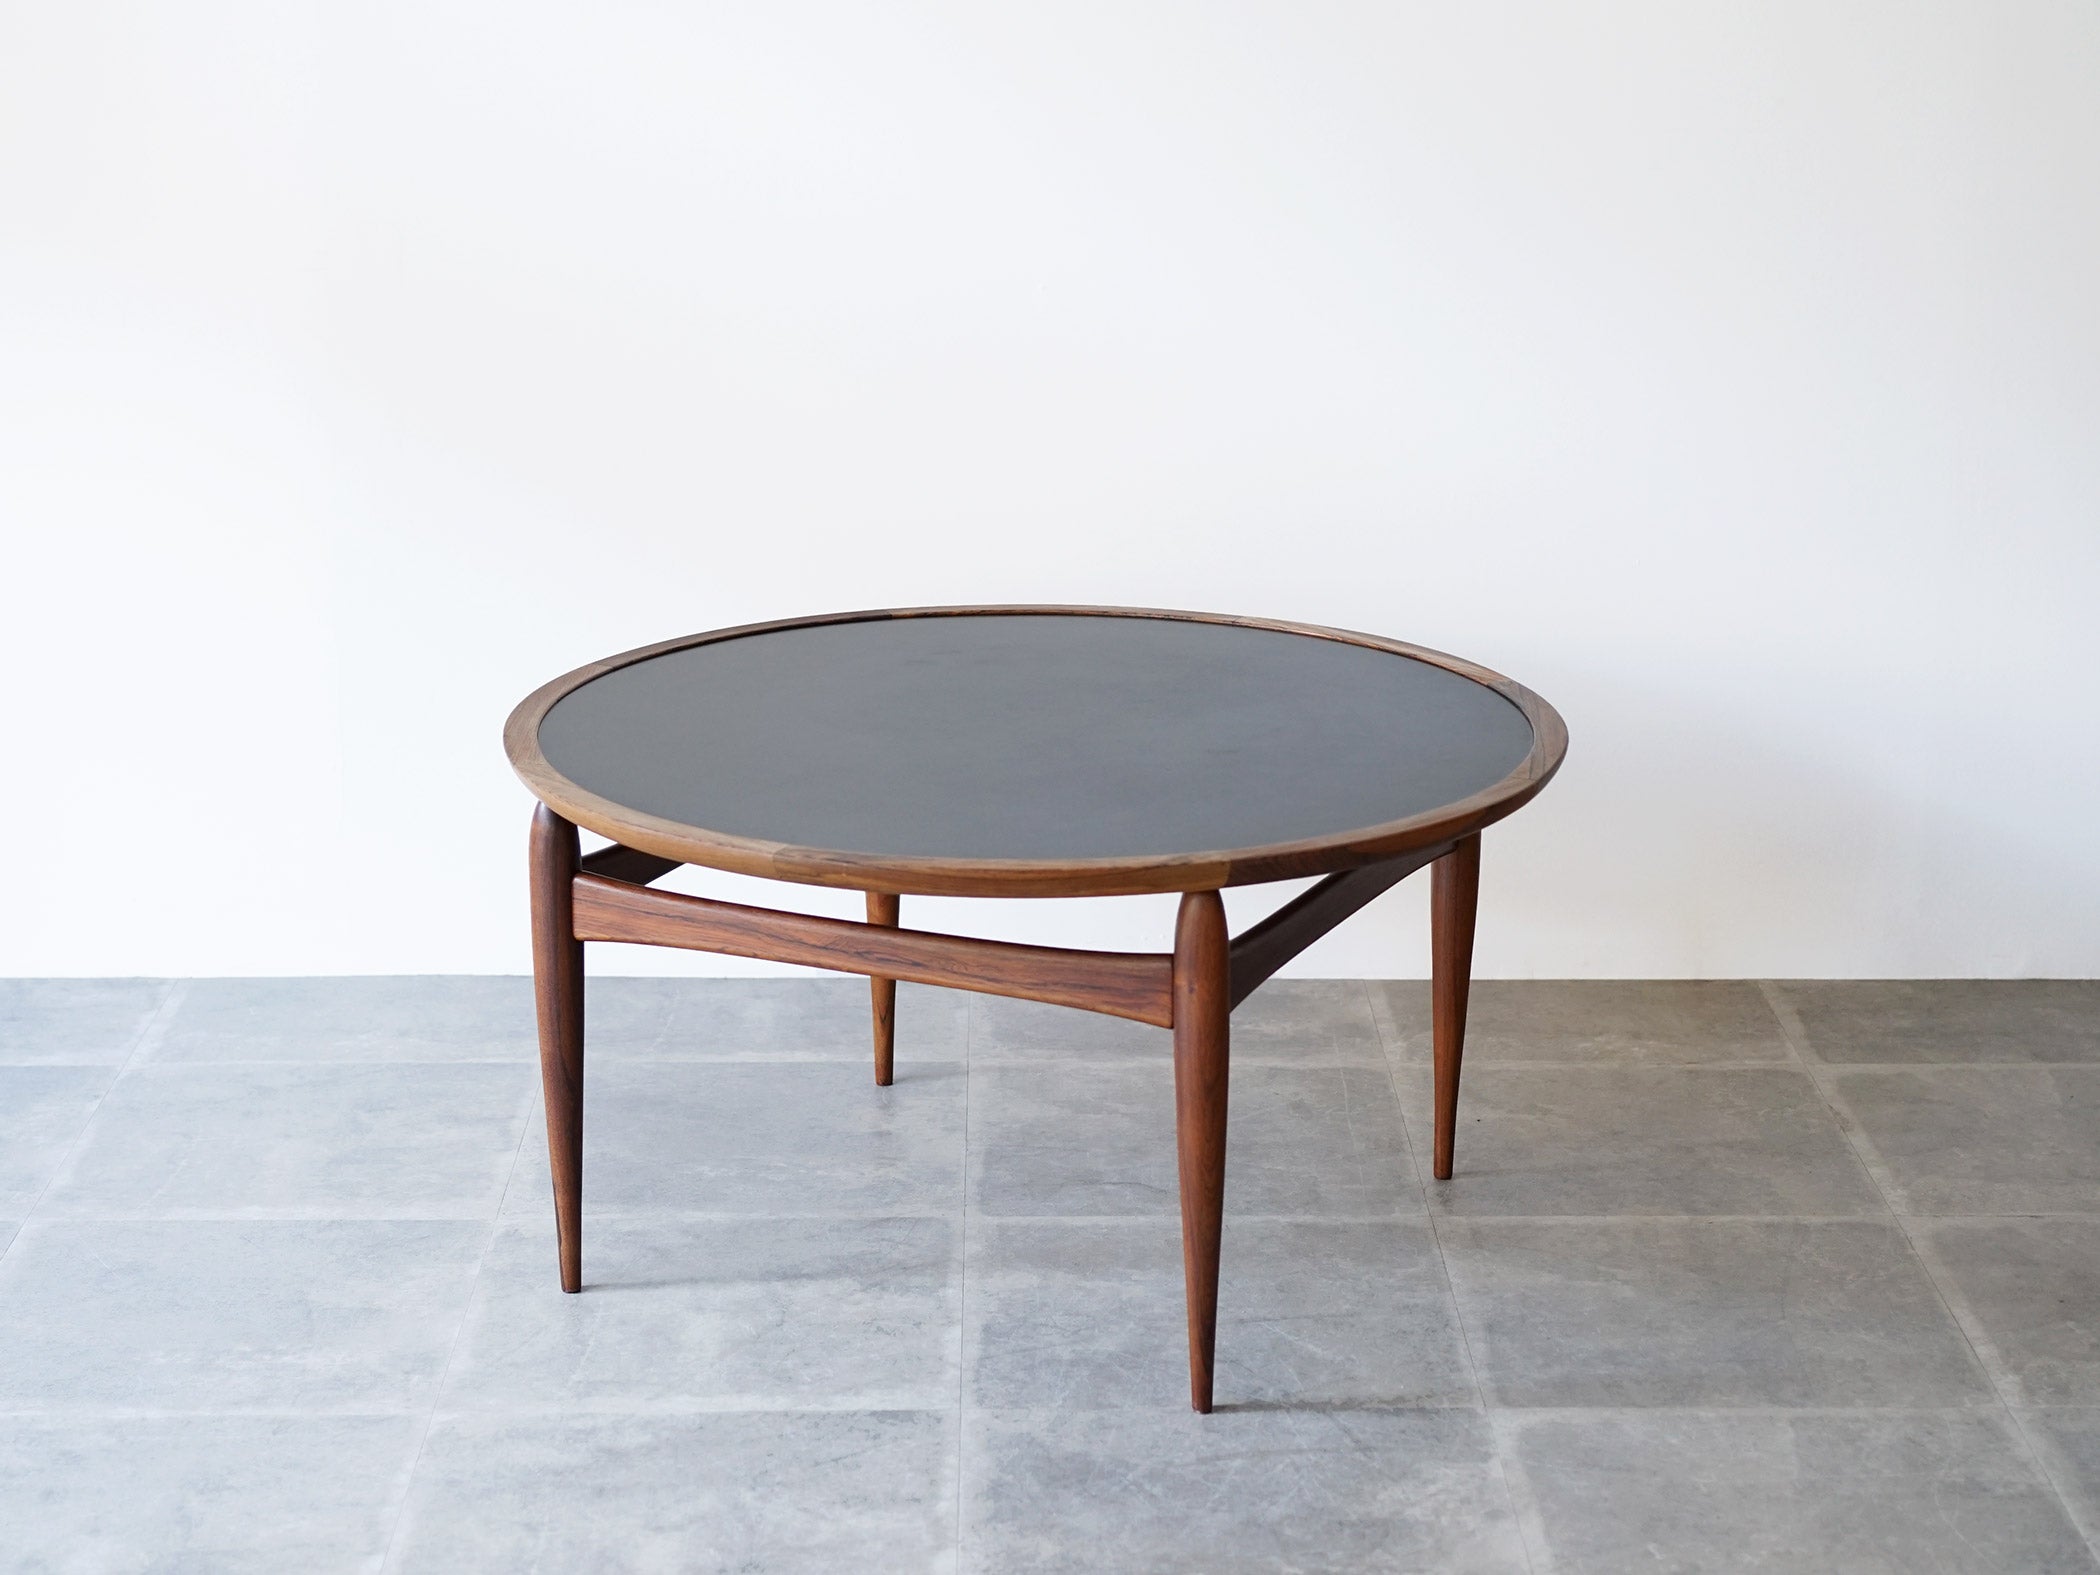 アイヴァンAヨハンソン ブラジリアンローズウッドの丸テーブル コーヒーテーブル Ejvind A.Johansson Reversable Table 北欧デザインのローテーブル